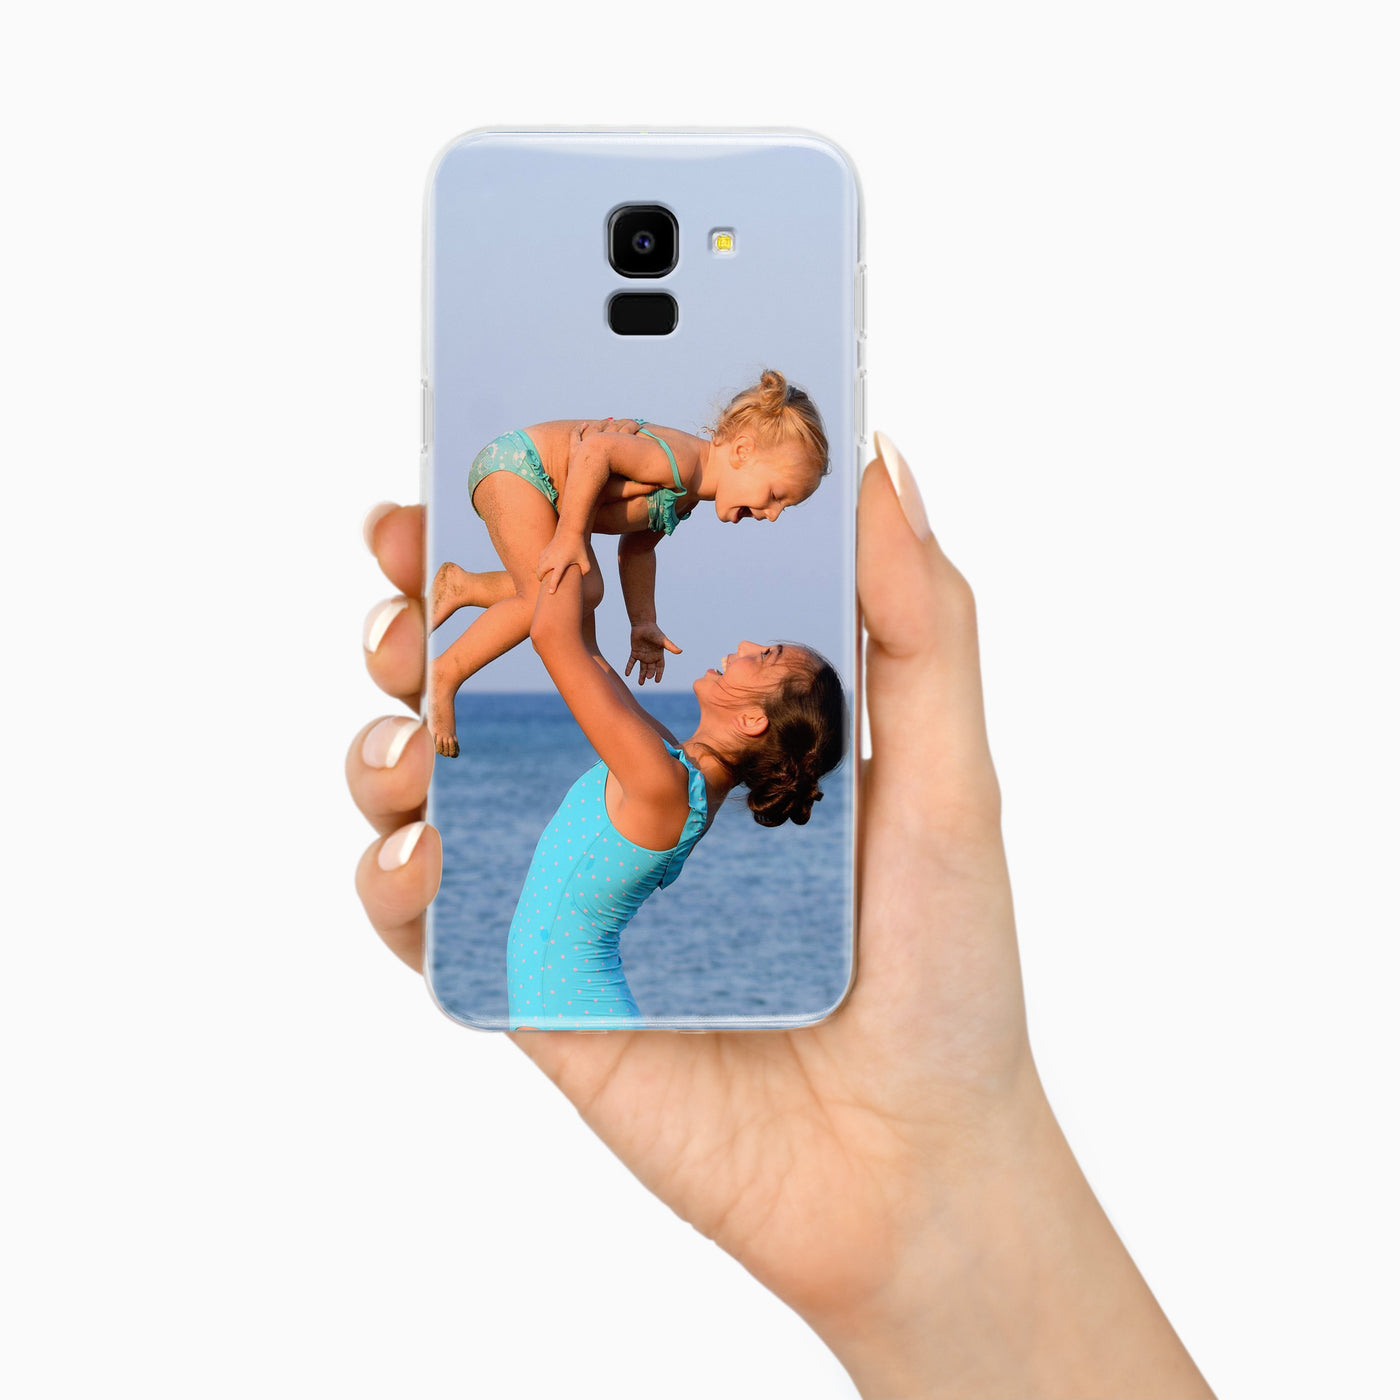 Samsung Galaxy J6 Plus 2018 Handyhülle selbst gestalten